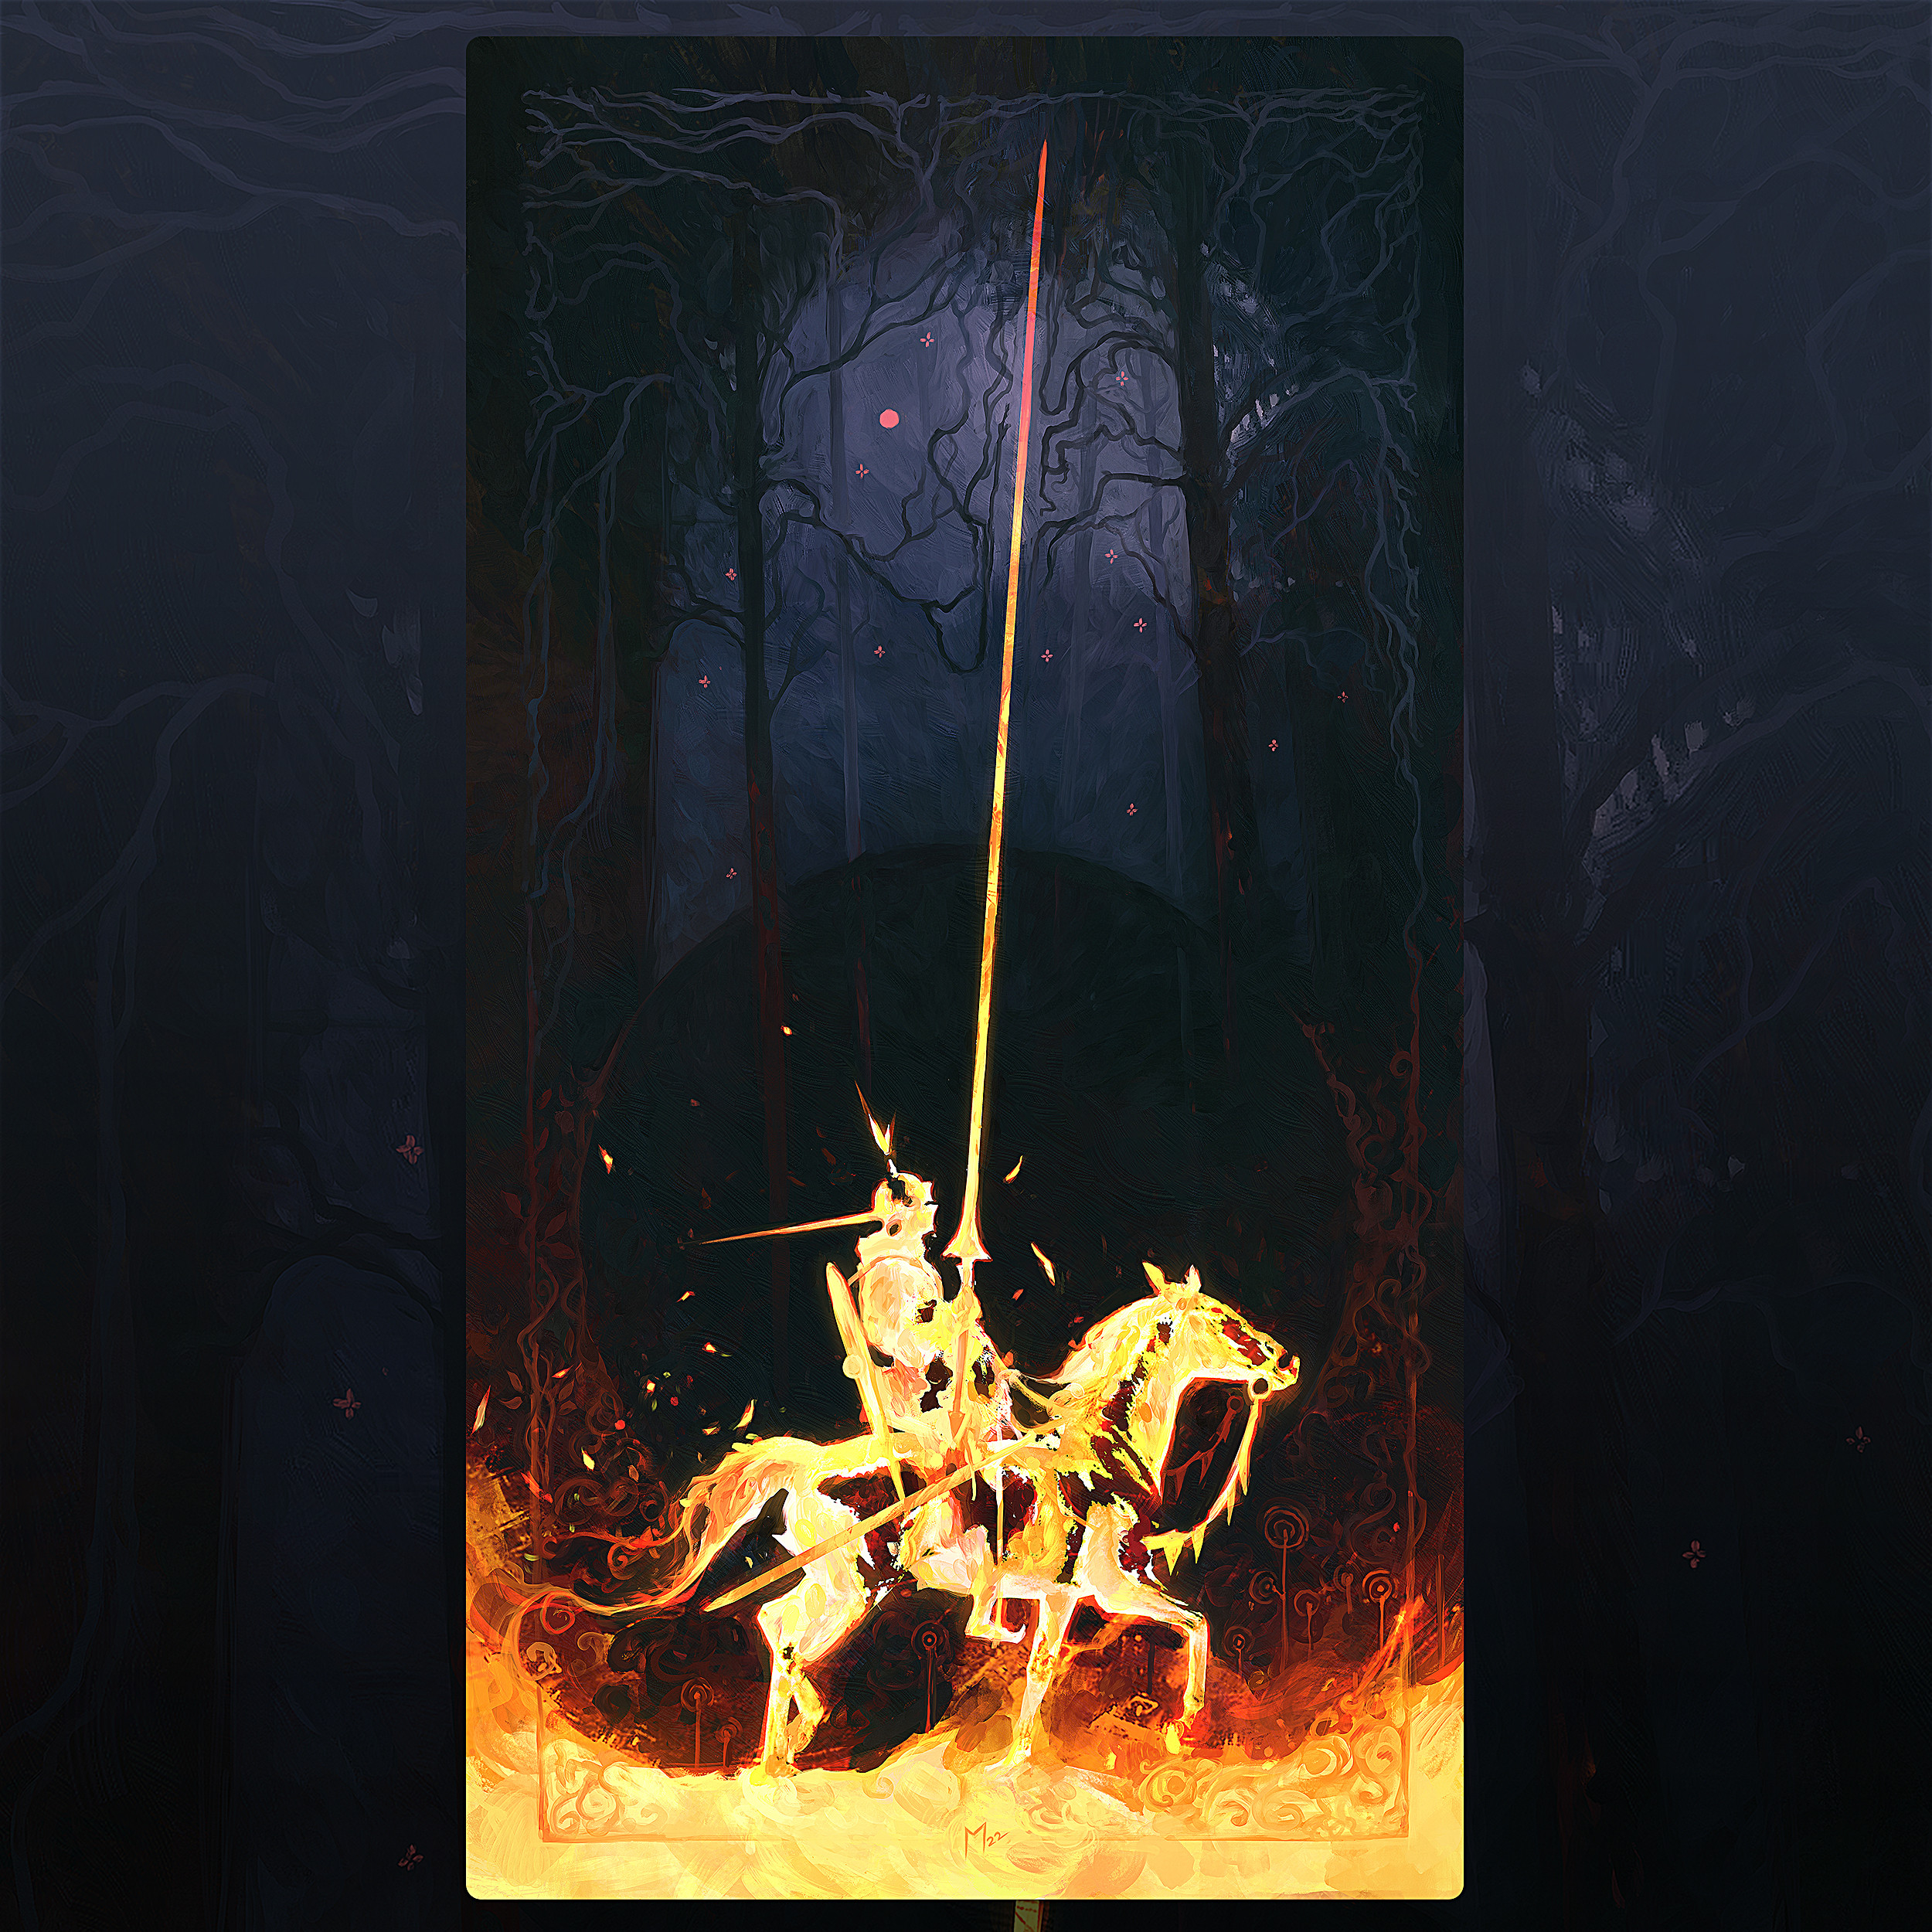 General 2500x2500 artwork digital art knight horse fire dark fantasy art